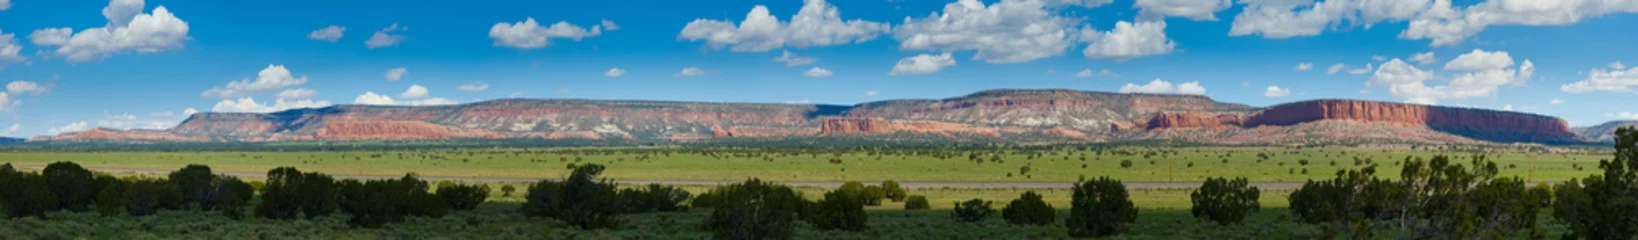 Gordijnen Rode bergen van Arizona - panorama © gijones